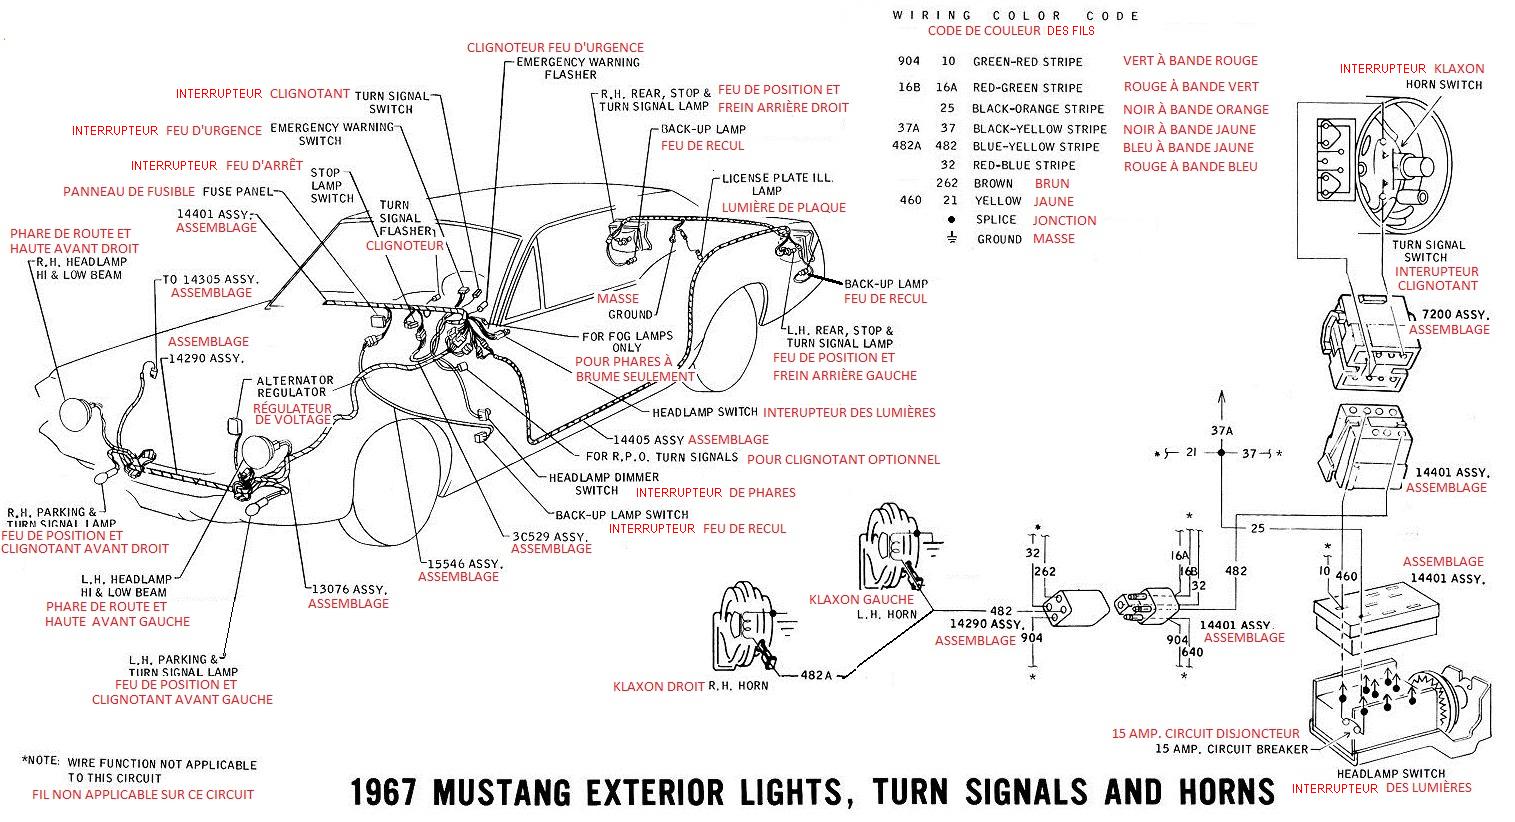 Schéma et diagramme électrique en français pour la Mustang 1967 Ok_05_10